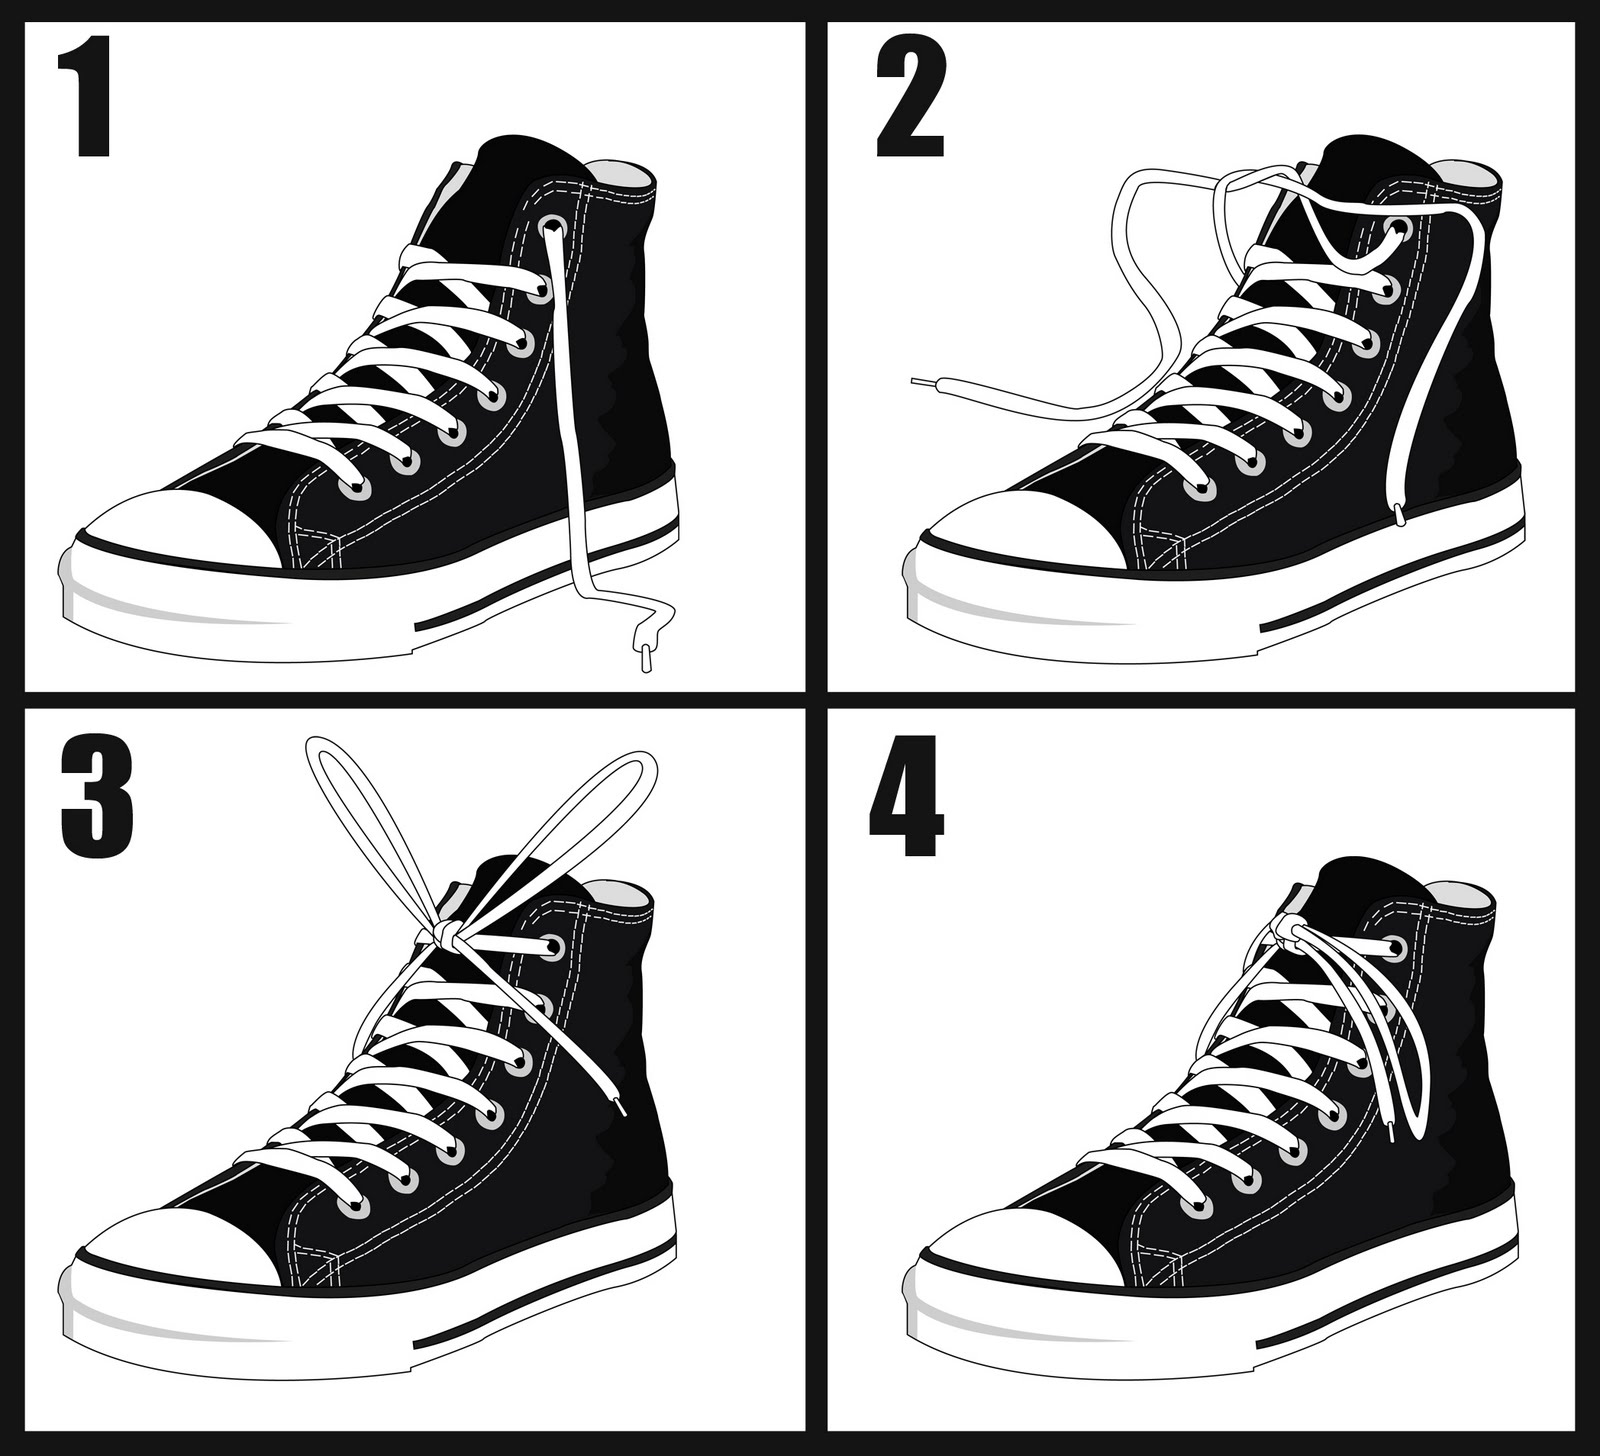 Branden Creese Artwork - Inside Branden's Head: How to Tie Your Shoes